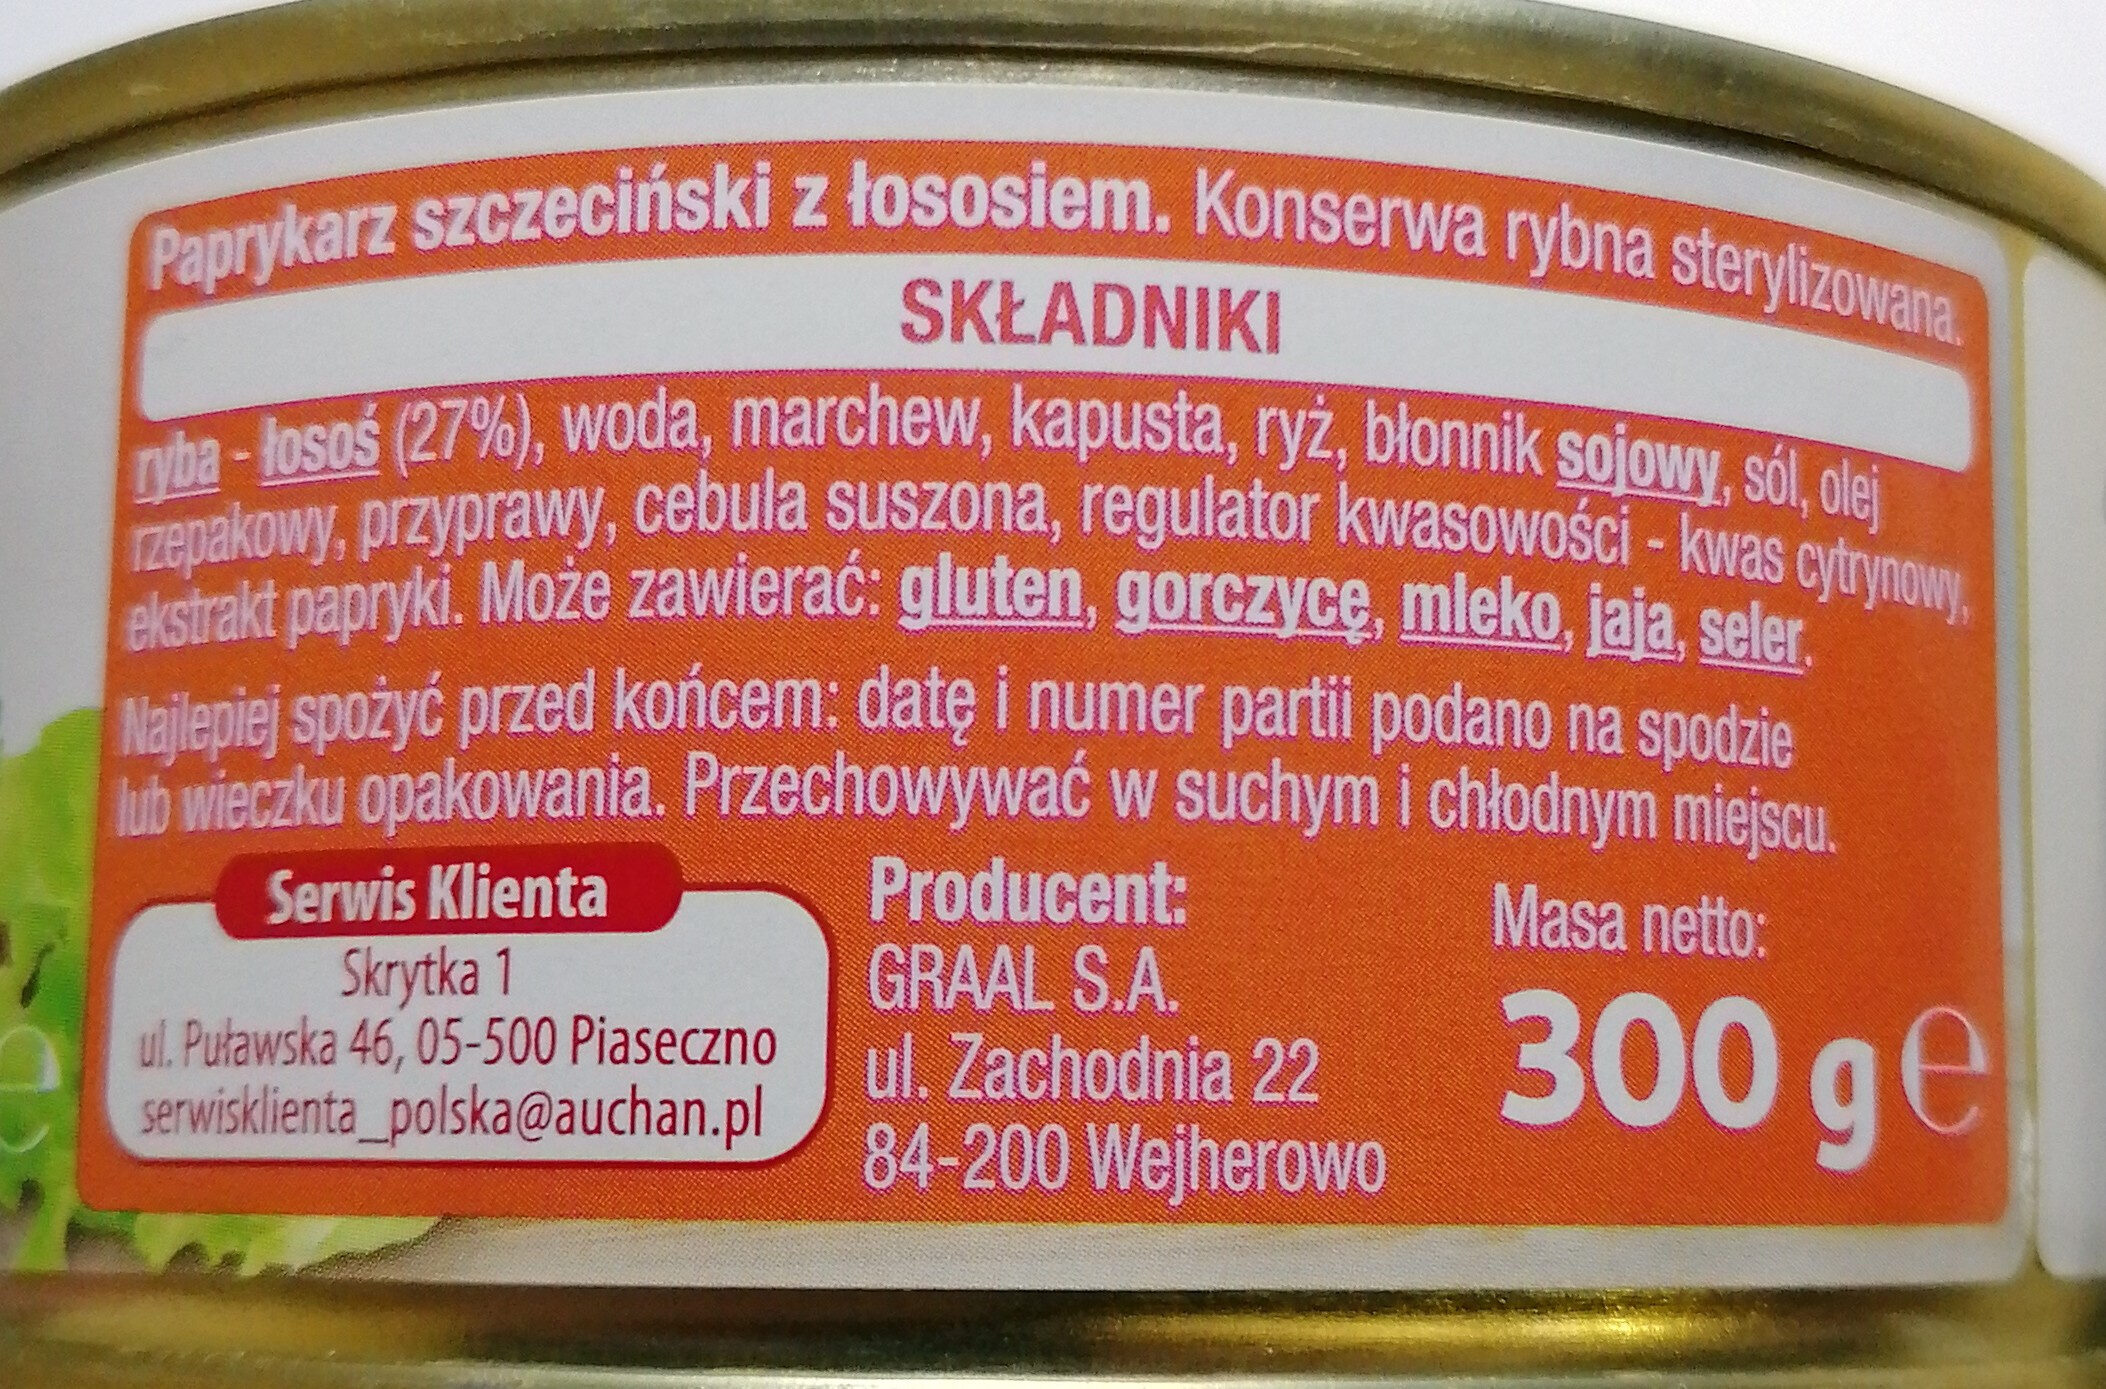 Paprykarz Szczeciński z łososiem. - Ingredients - pl